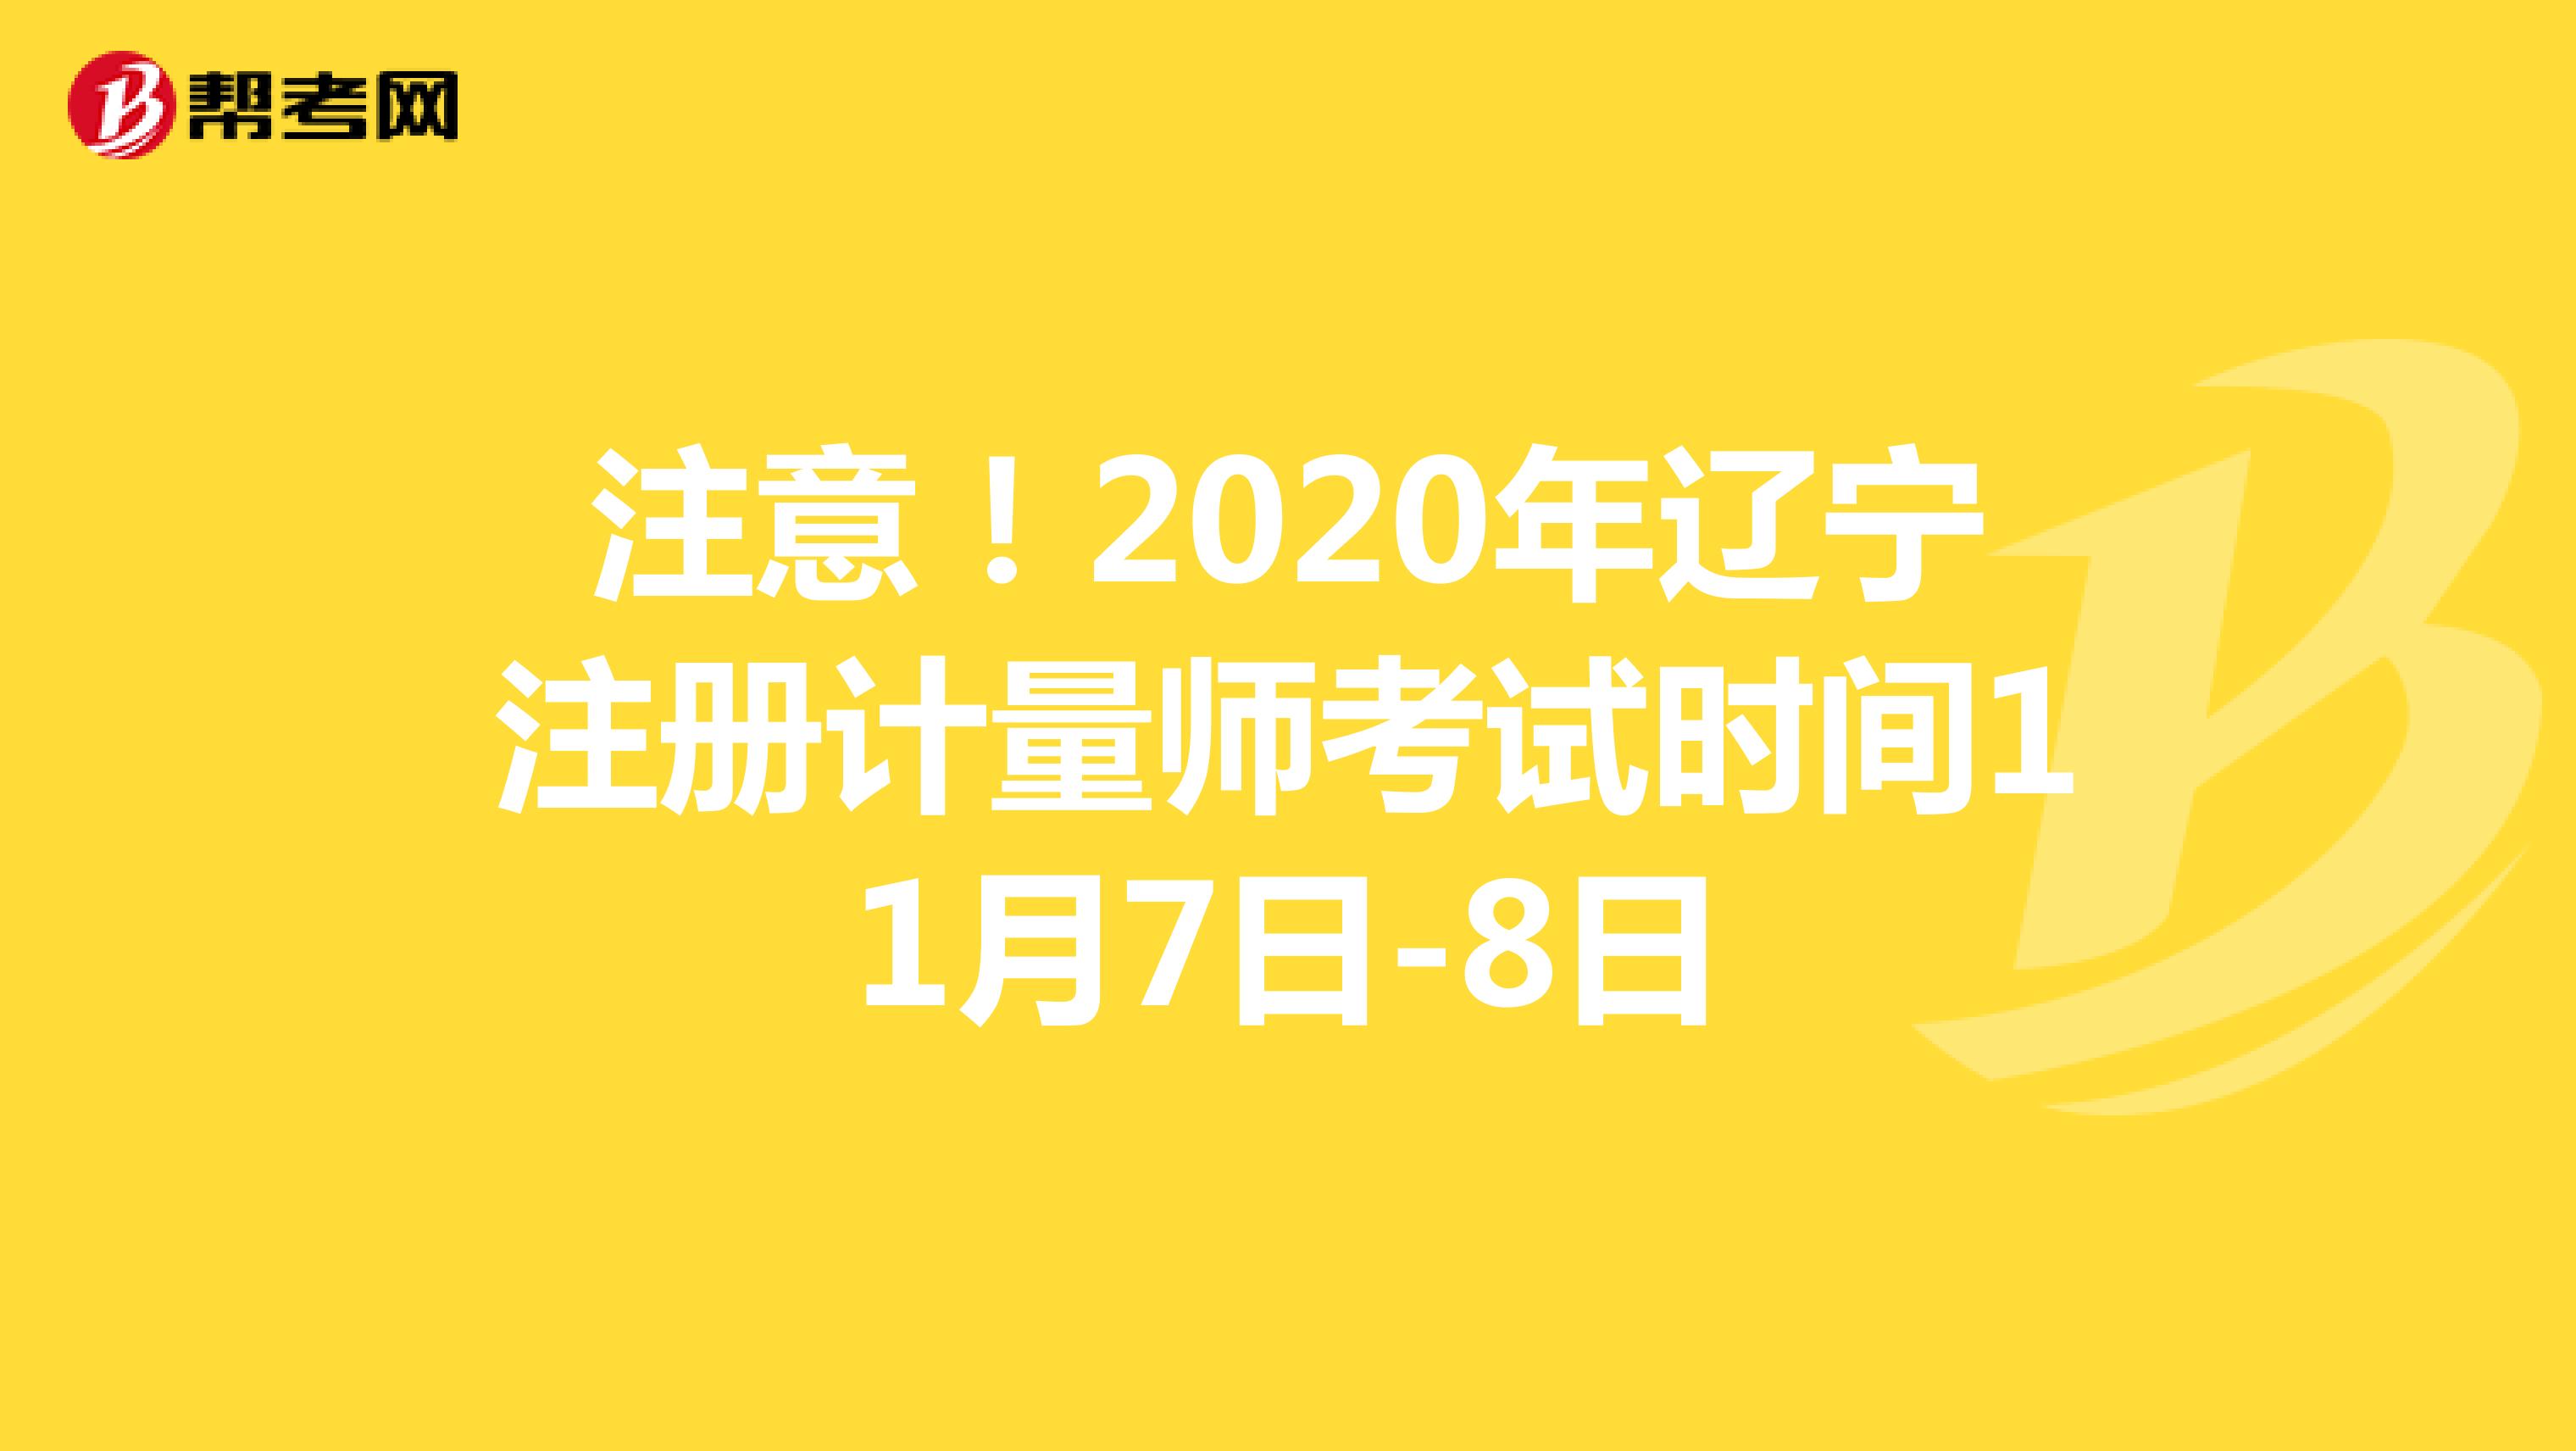 注意！2020年辽宁注册计量师考试时间11月7日-8日